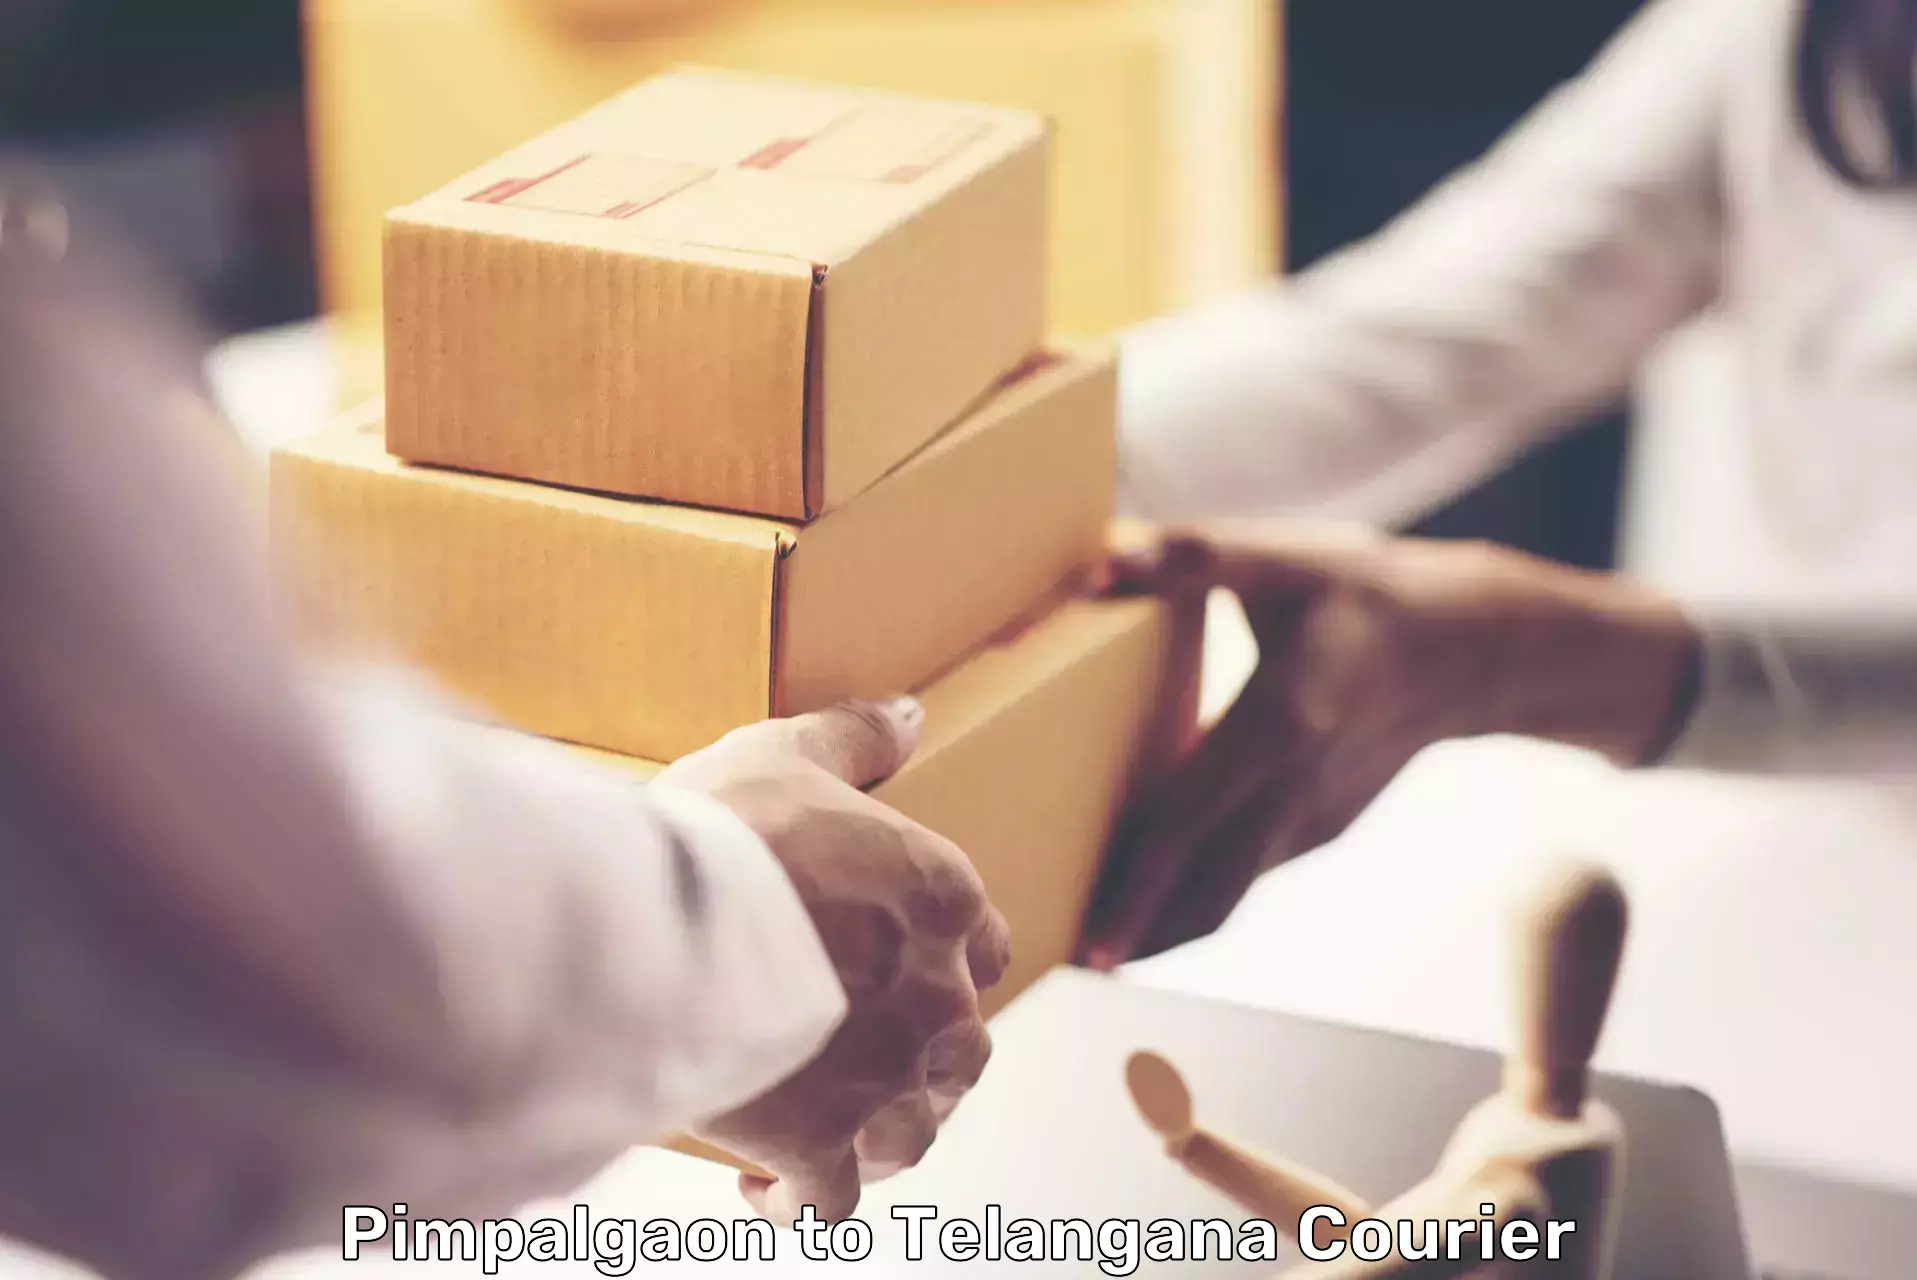 Smart parcel delivery in Pimpalgaon to Tallada